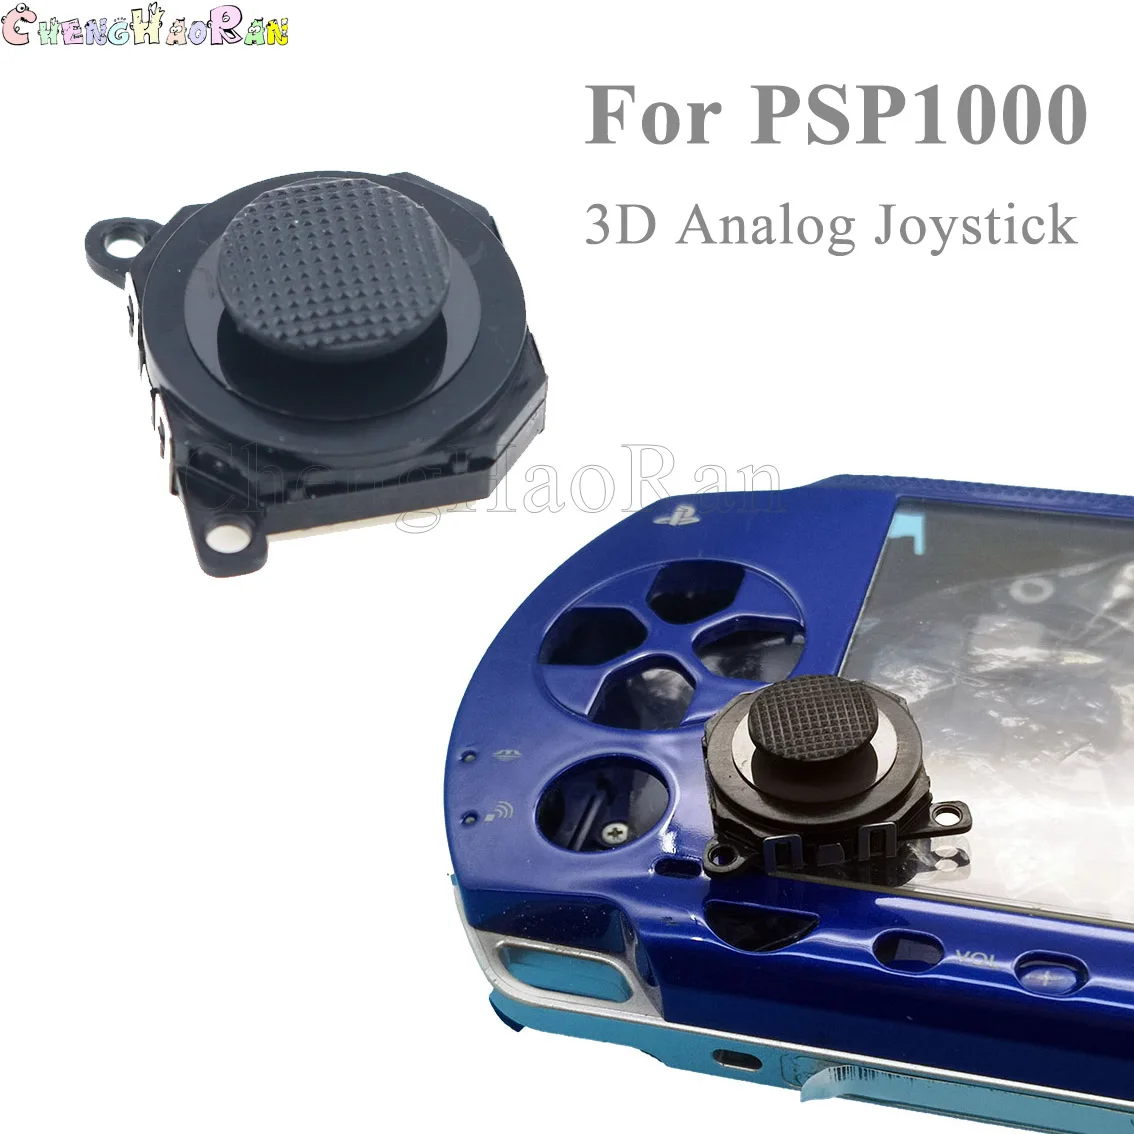 Wanten Idioot kiezen 1PCS 3D Analog Joystick thumb Stick grips Cap Button Module Control  Replacement Repair Part for Sony PSP 1000 1004 1008 PSP1000